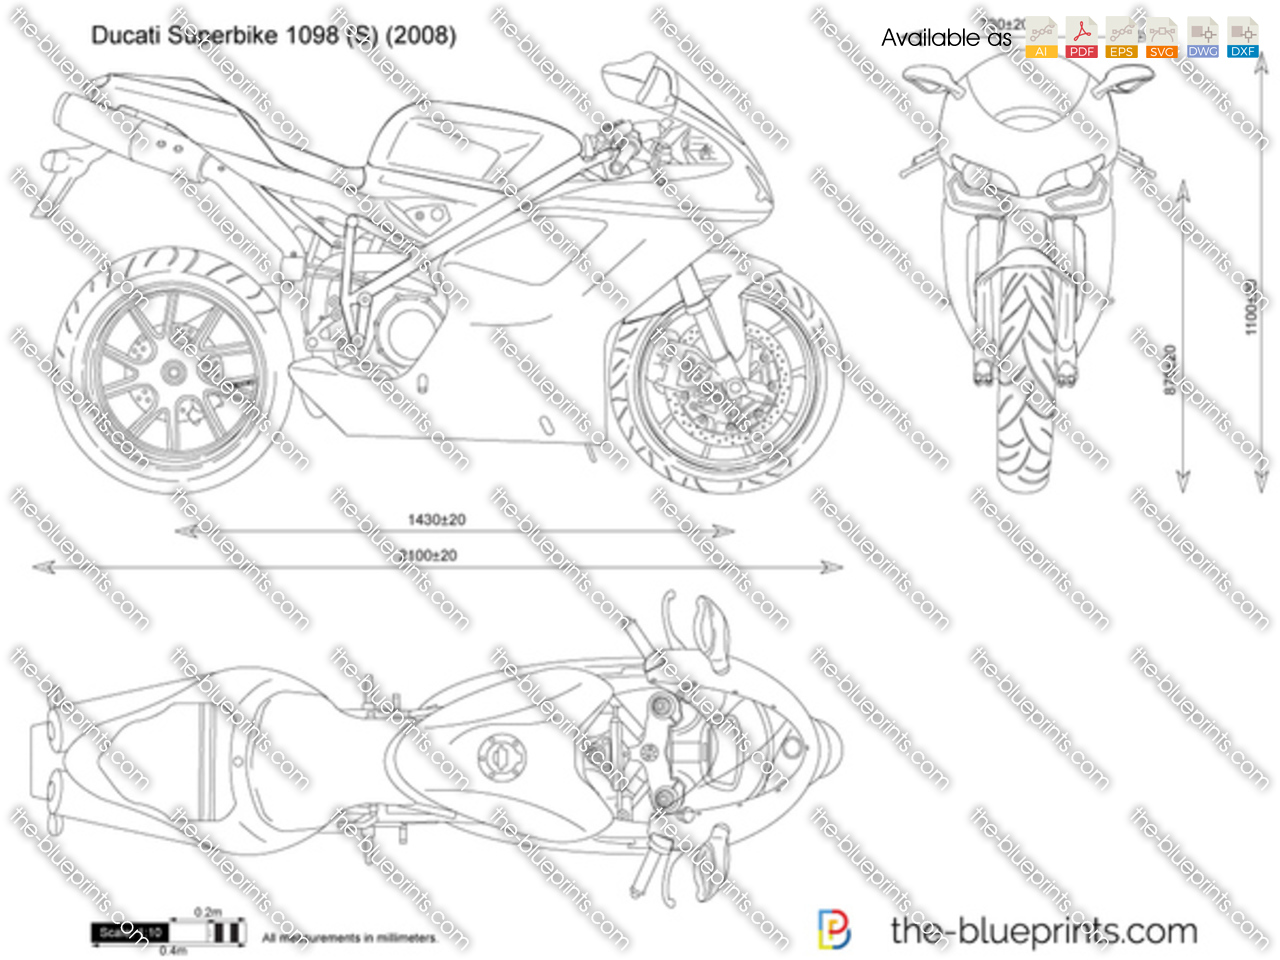 Ducati Superbike 1098 (S)